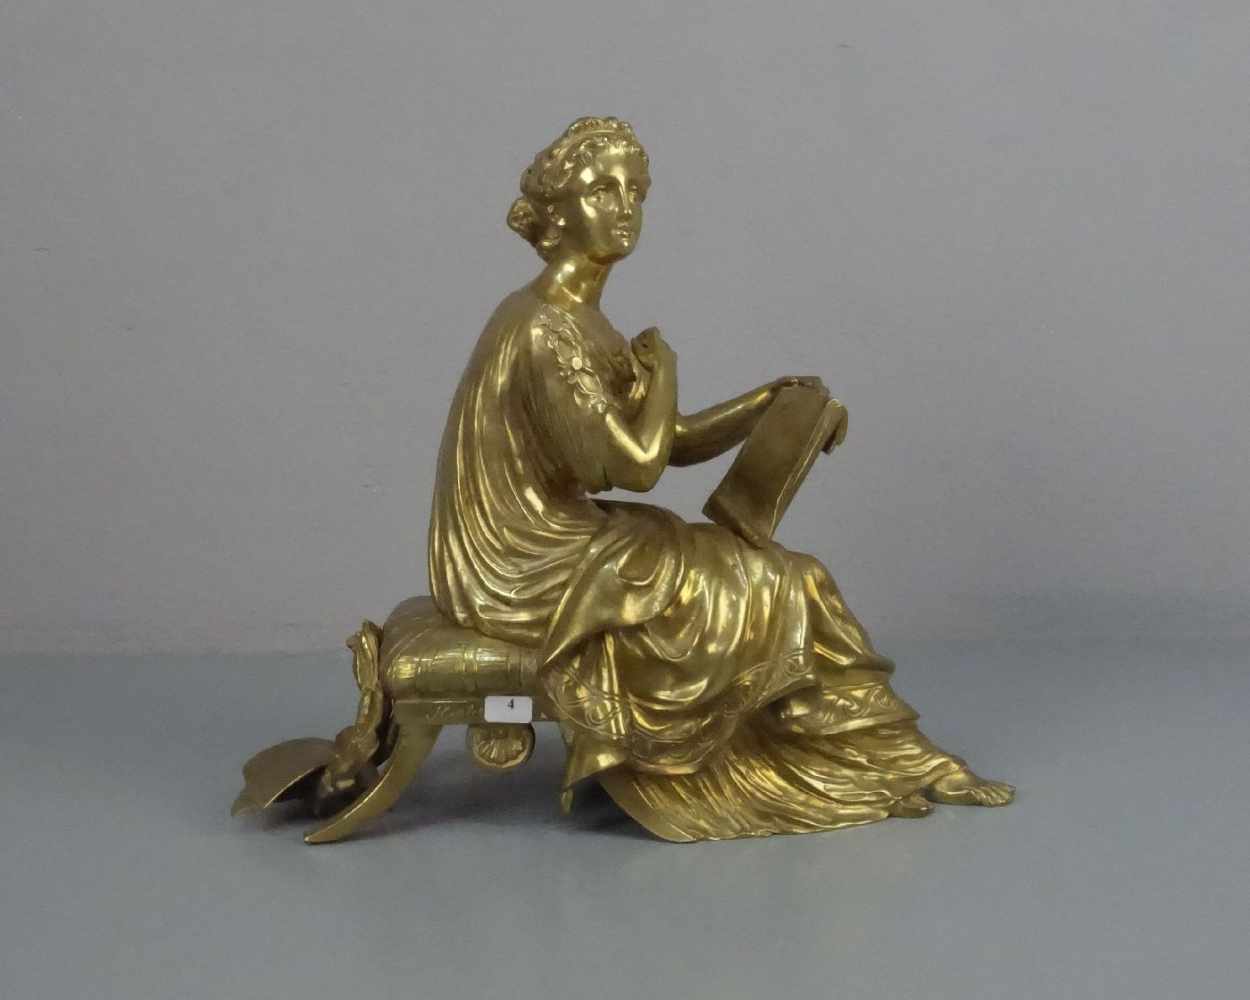 HOULET (französischer Bildhauer des 19. Jh.), Skulptur / sculpture: "Allegorie der Lyrik", Bronze -